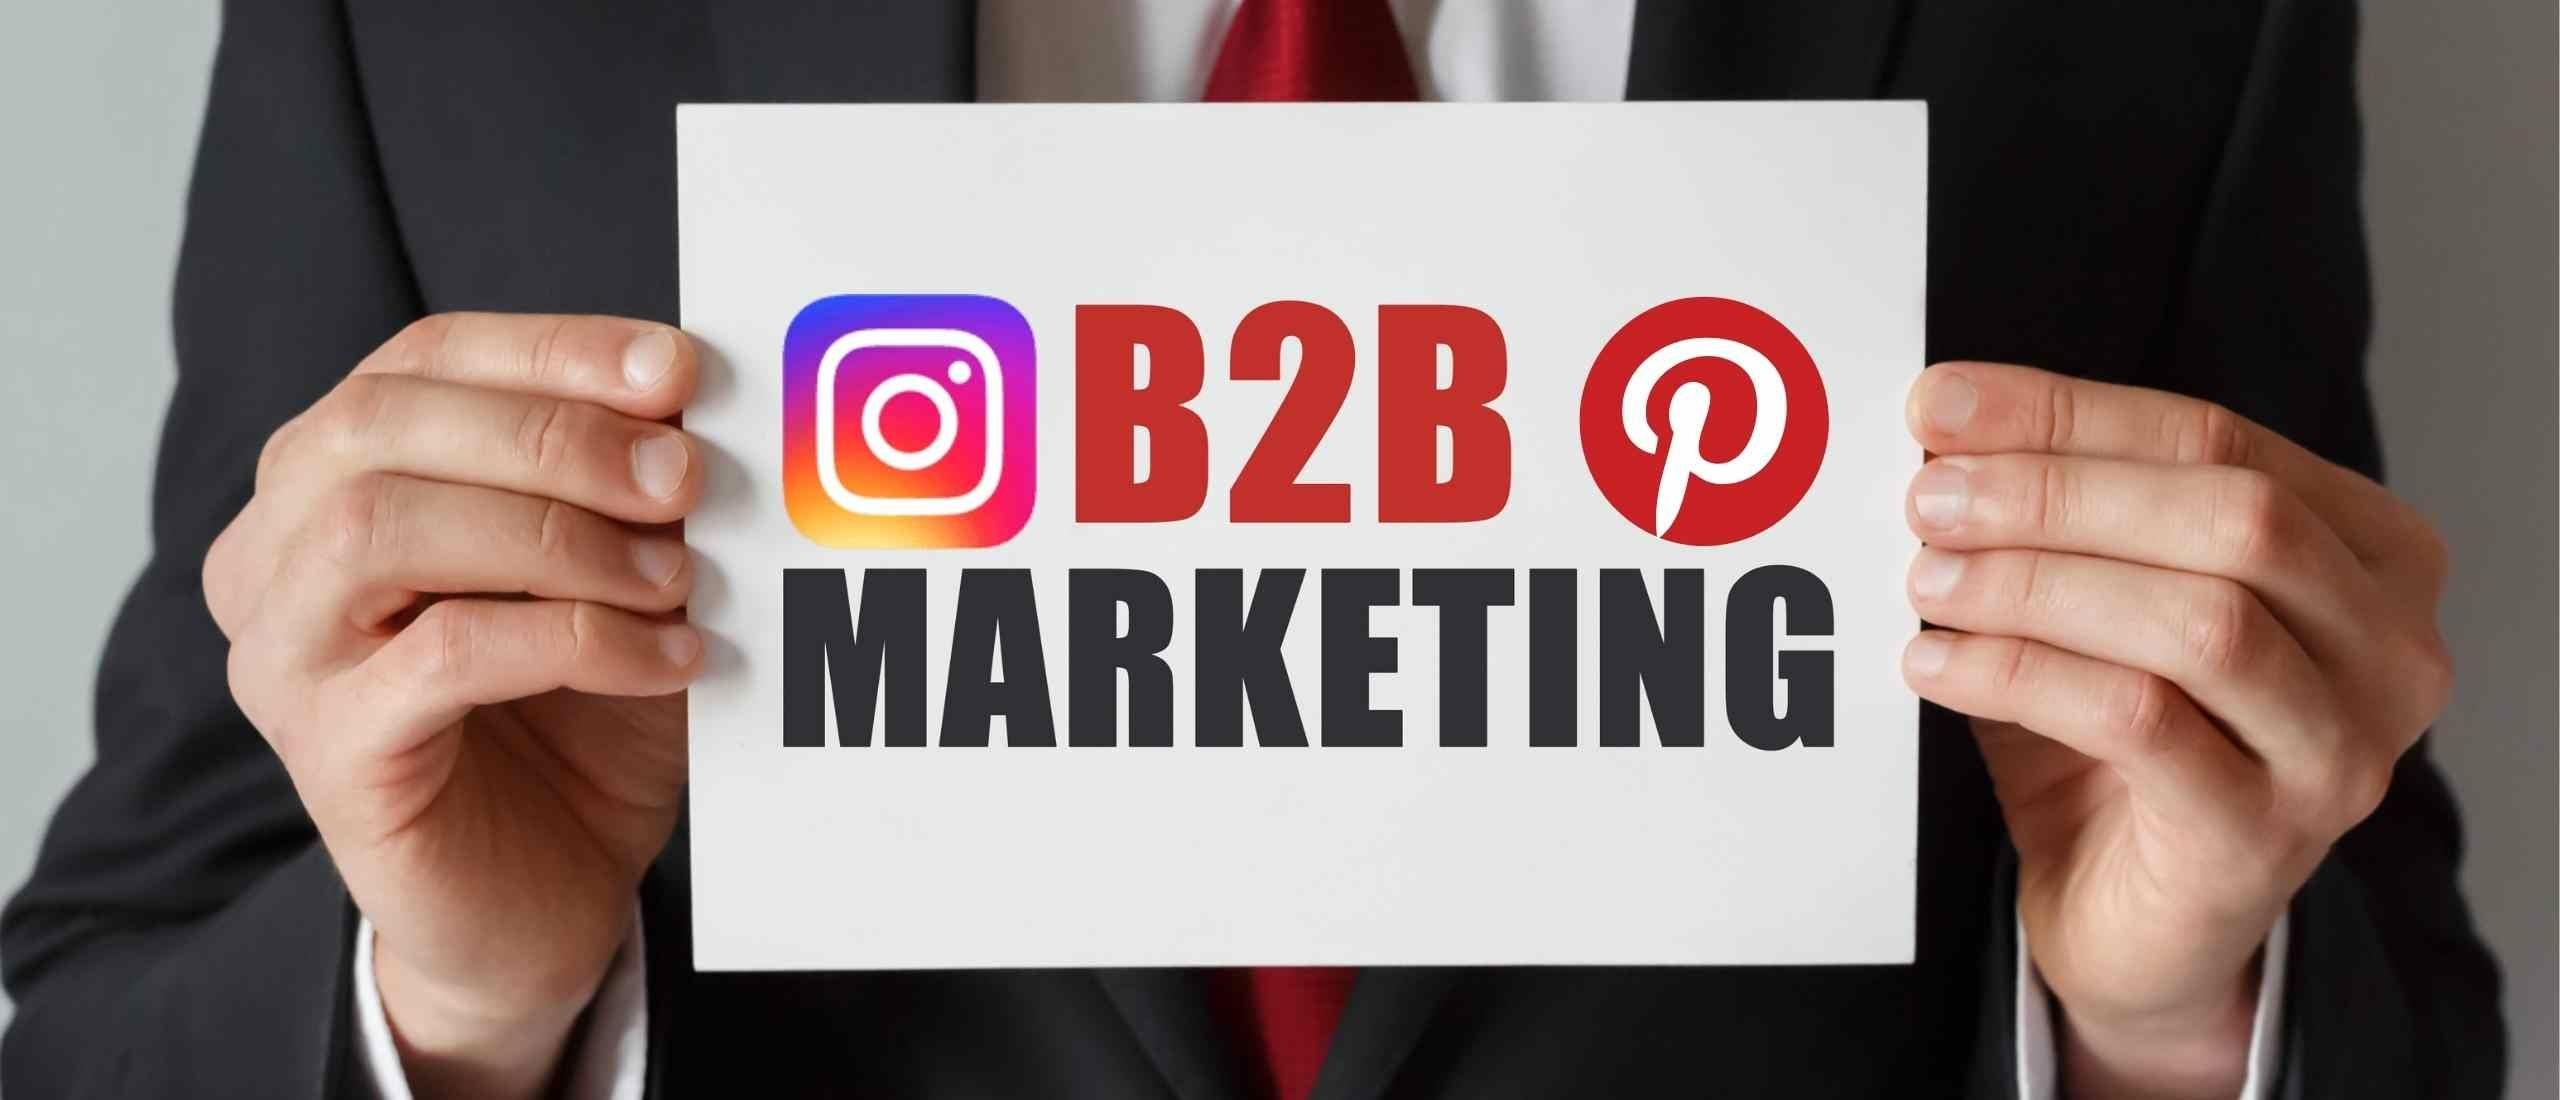 b2b-marketing-met-pinterest-enof-instagram